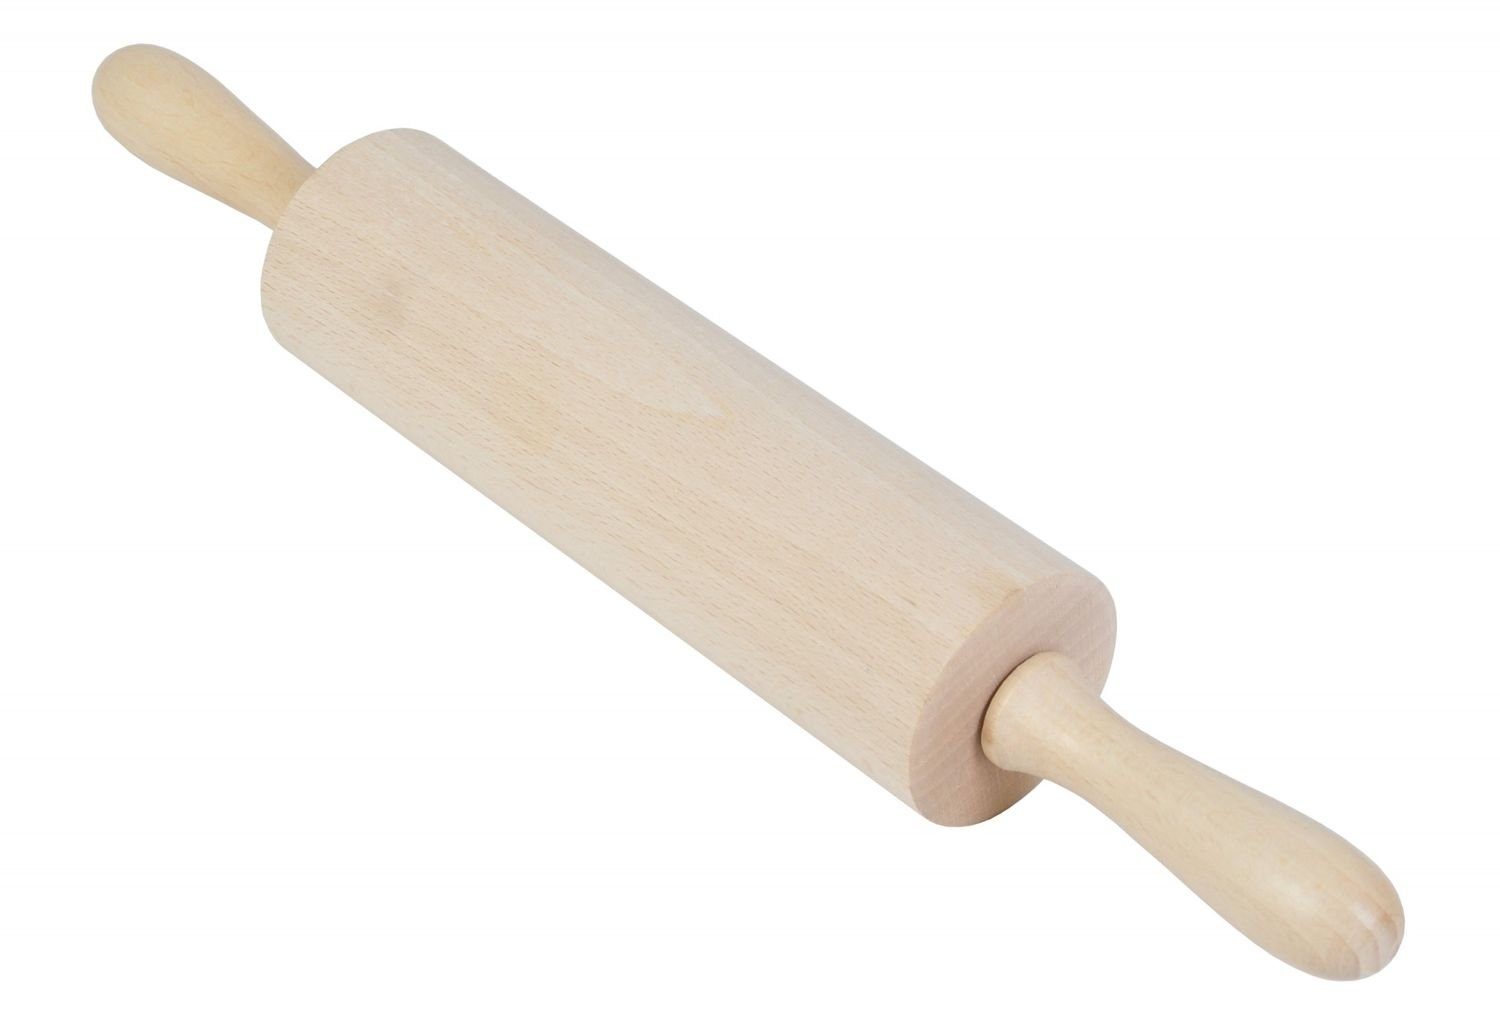 Gravidus Teigroller Teigrolle ohne Achse für Kinder Nudelholz Holz 25 cm